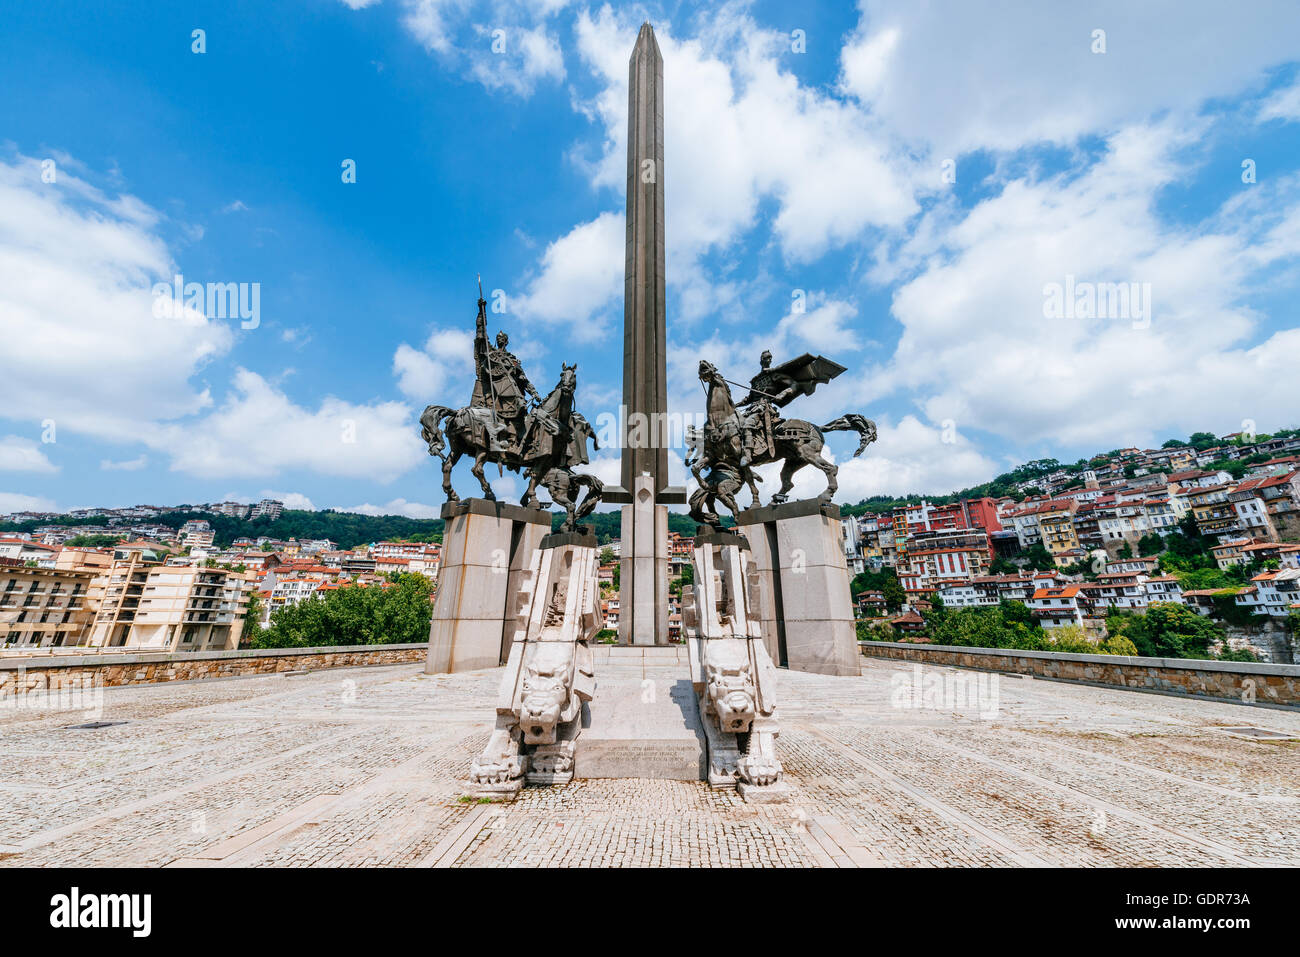 View of Monument Asenevtsi in Veliko Tarnovo, a city in north central Bulgaria. Stock Photo